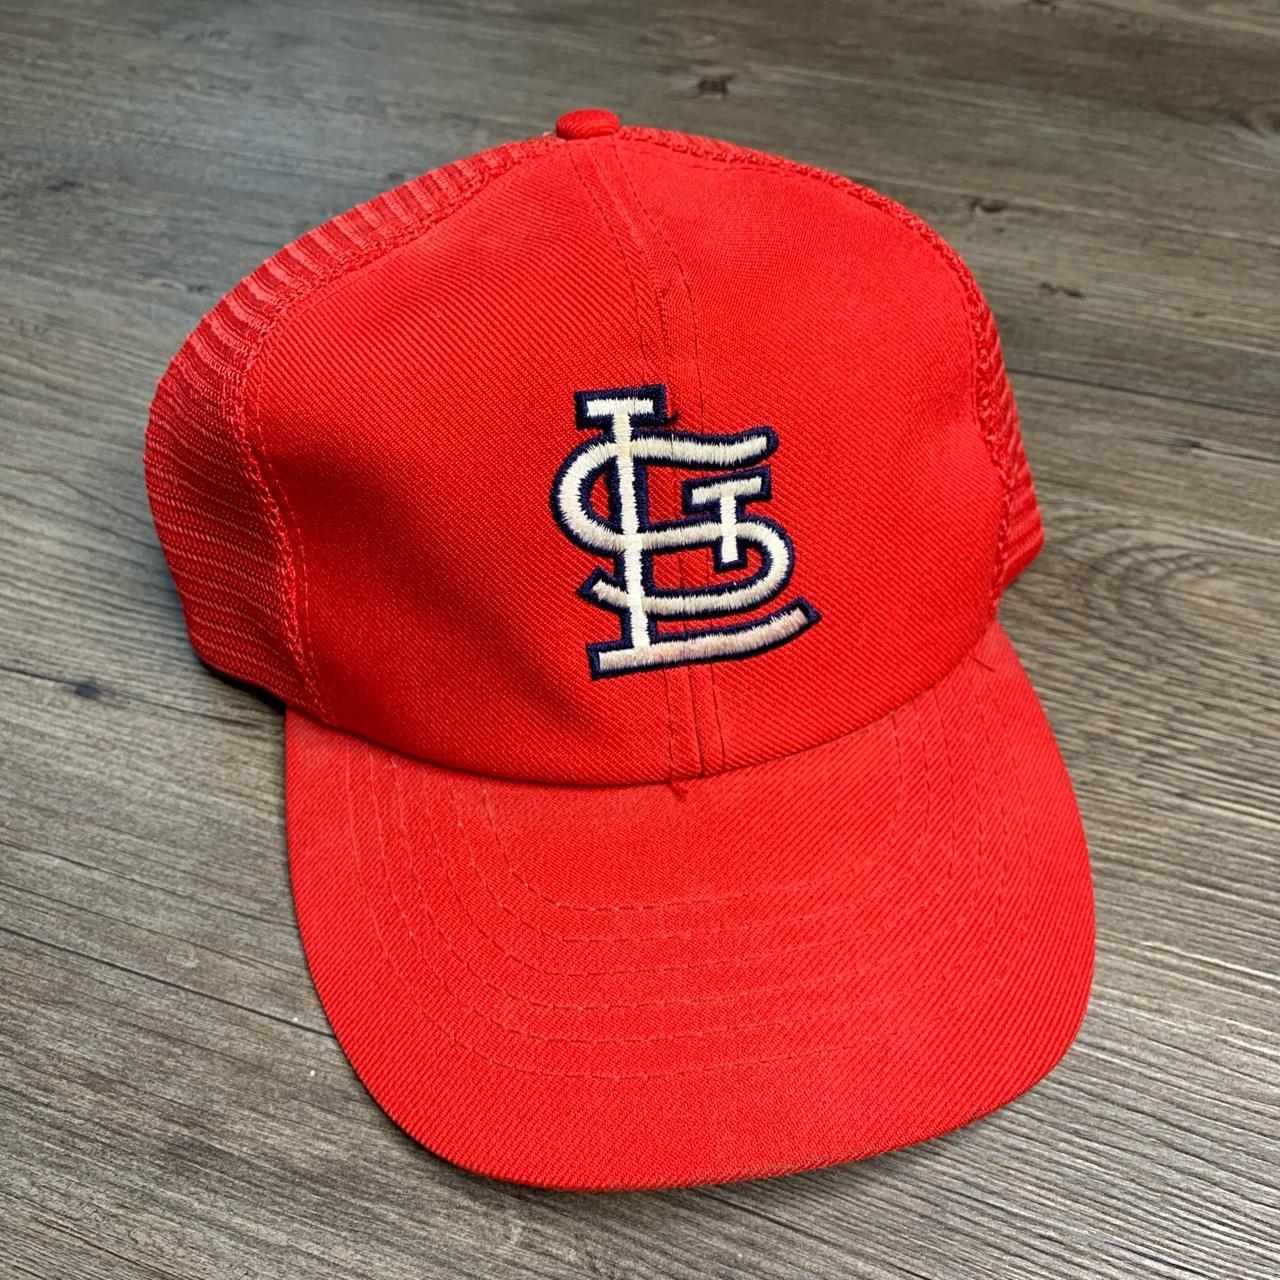 Vintage Cardinals Hat / St Louis Cardinals / 1980s St. Louis 